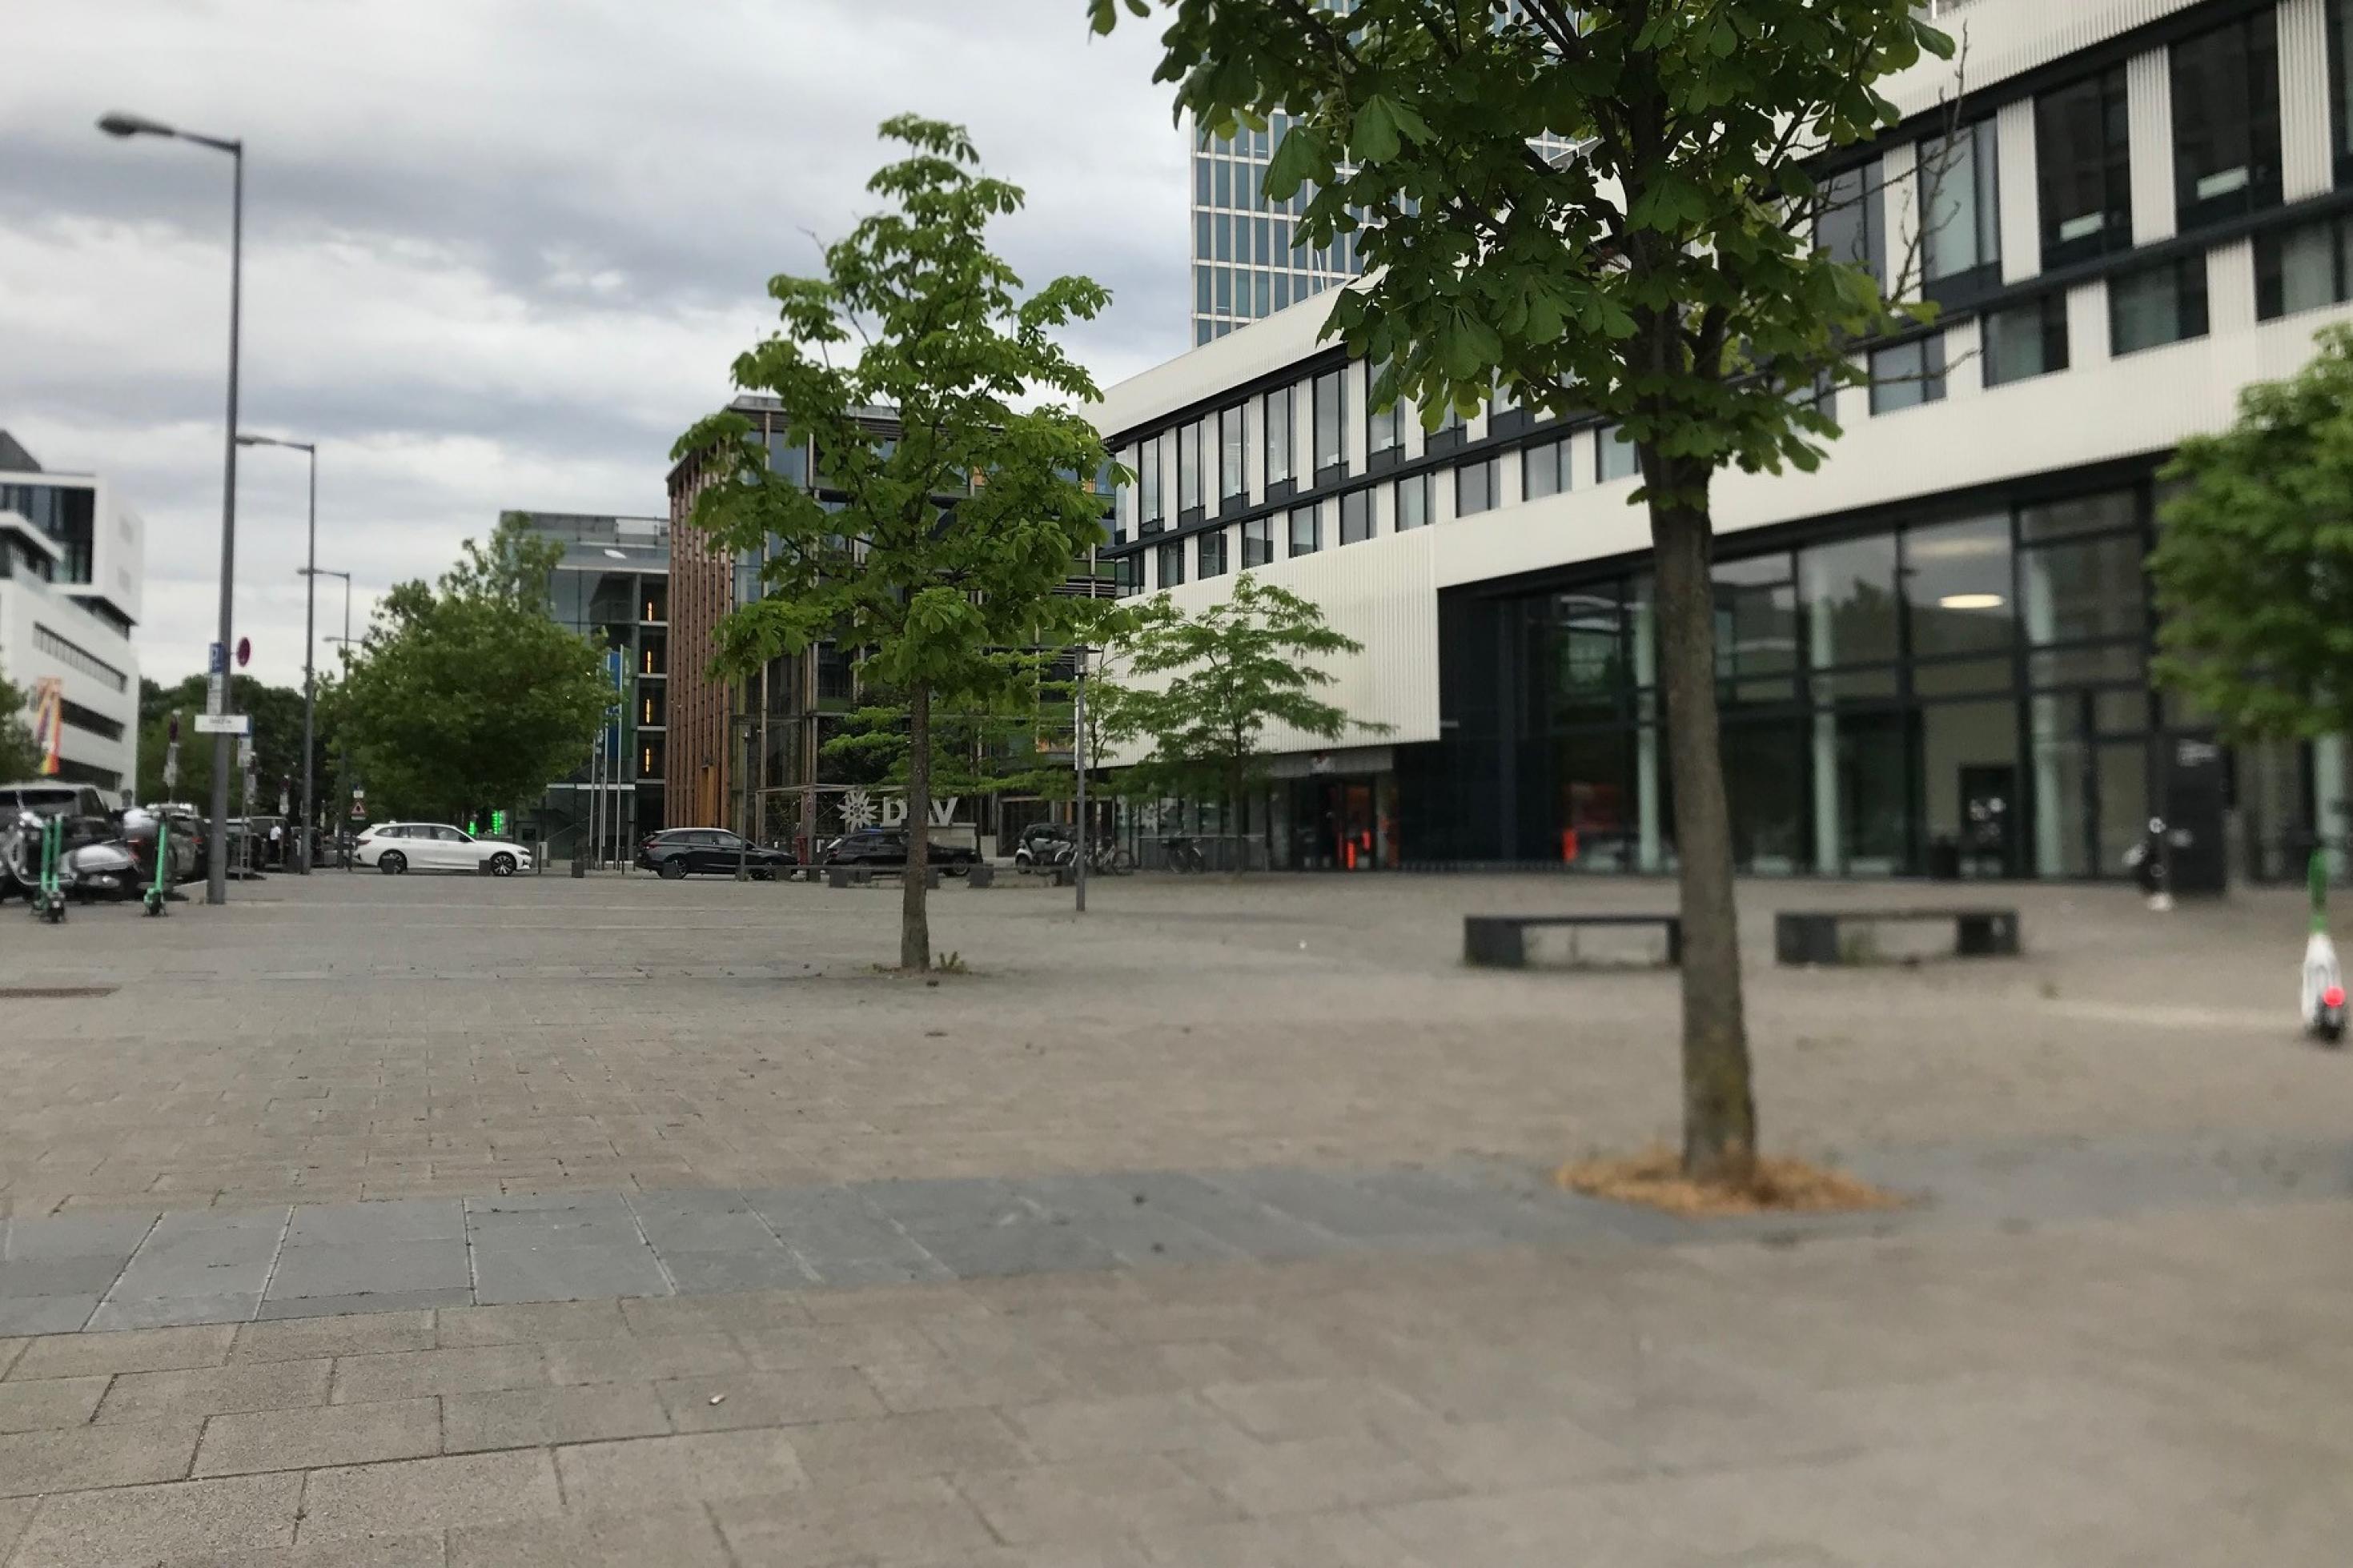 Kein Grün, der versiegelte Platz vor einem Gebäude in München.